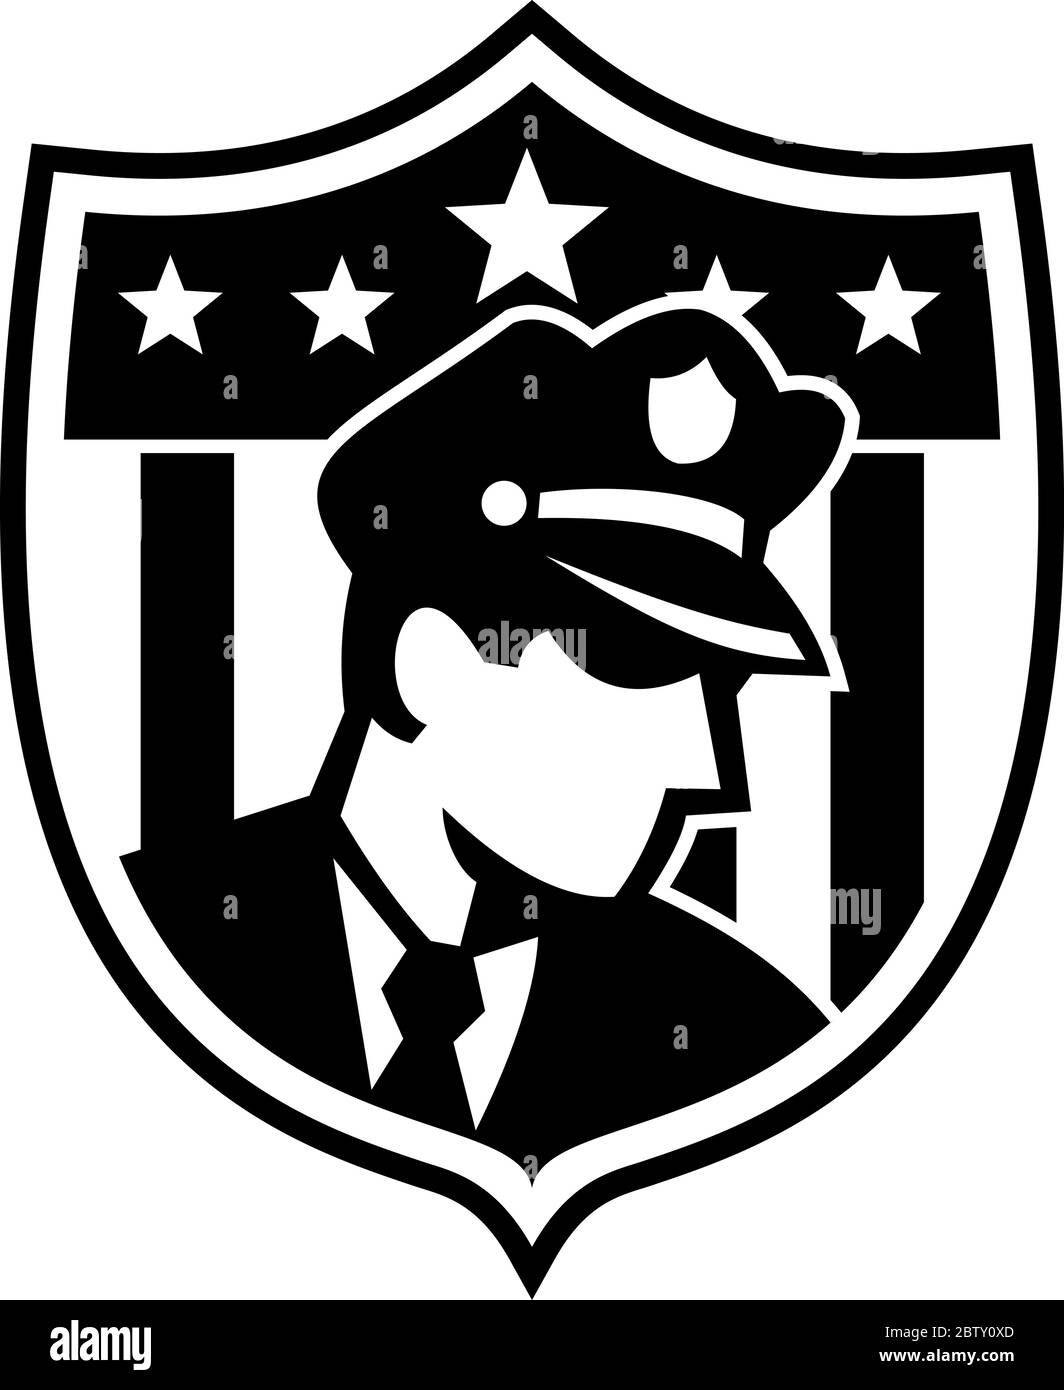 Illustration eines amerikanischen Sicherheitsbeamten Polizist oder Polizist Blick auf Seite gesetzt innerhalb Abzeichen Schild Wappen mit Sternen in Retro Schwarz an getan Stock Vektor